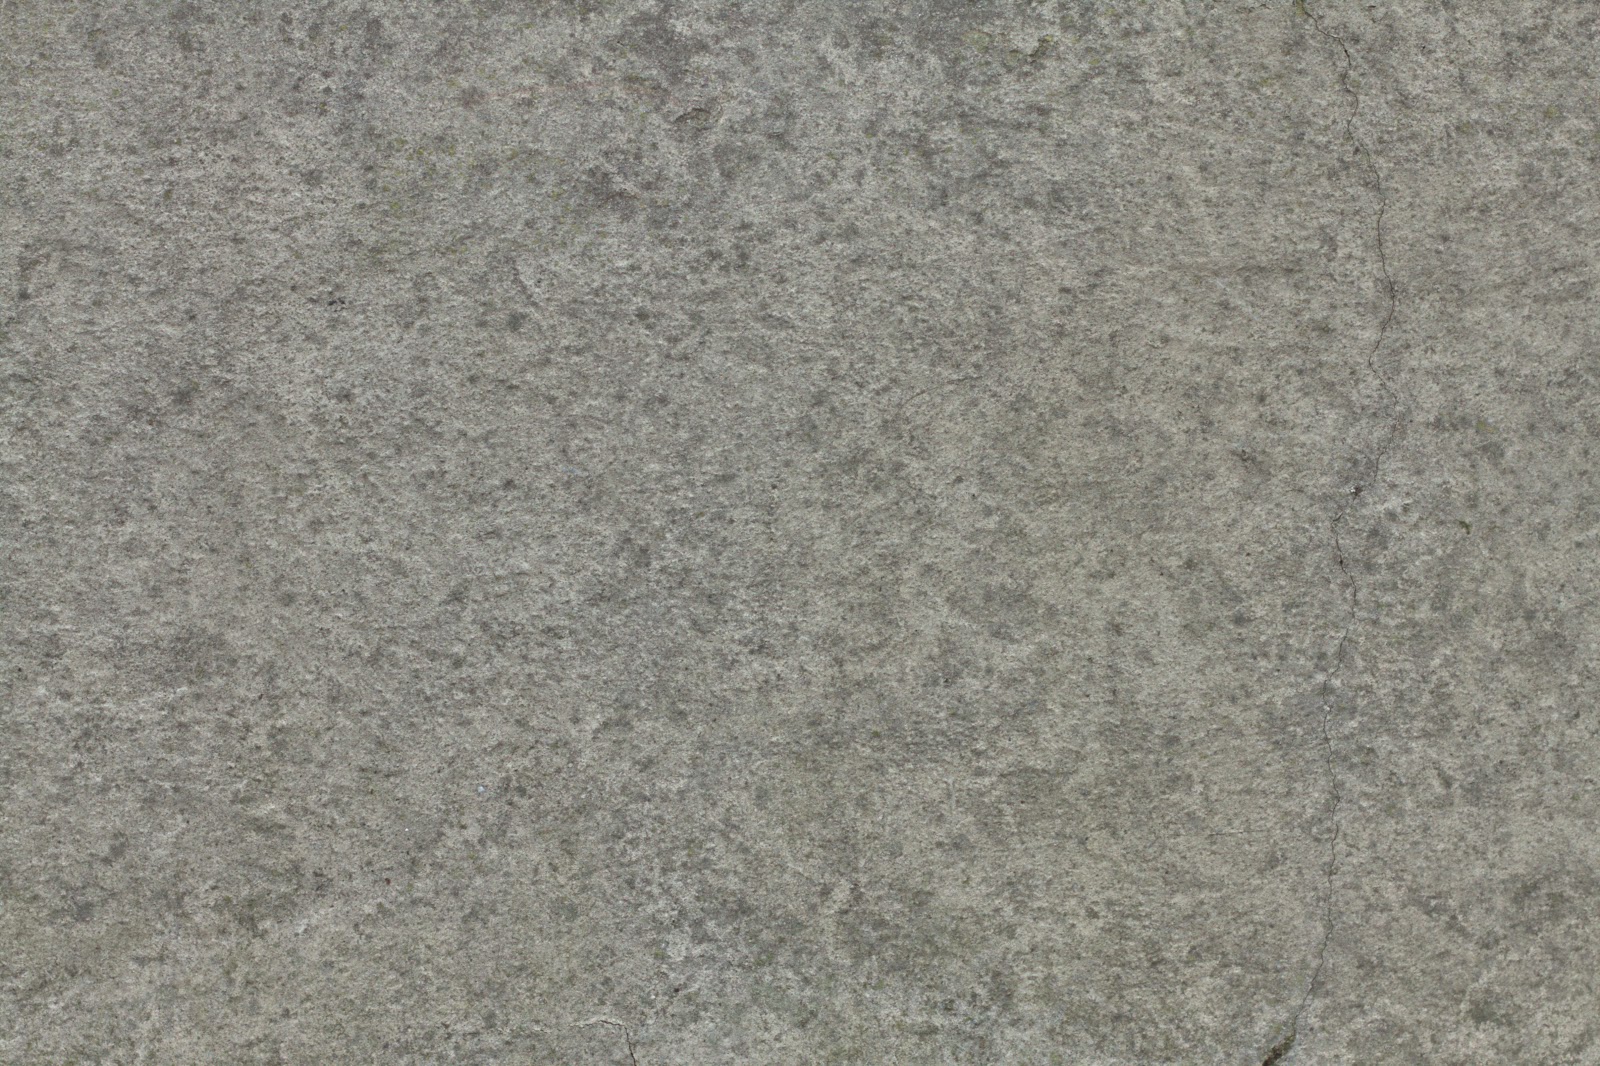 Concrete feb_2015 texture 4770x3178